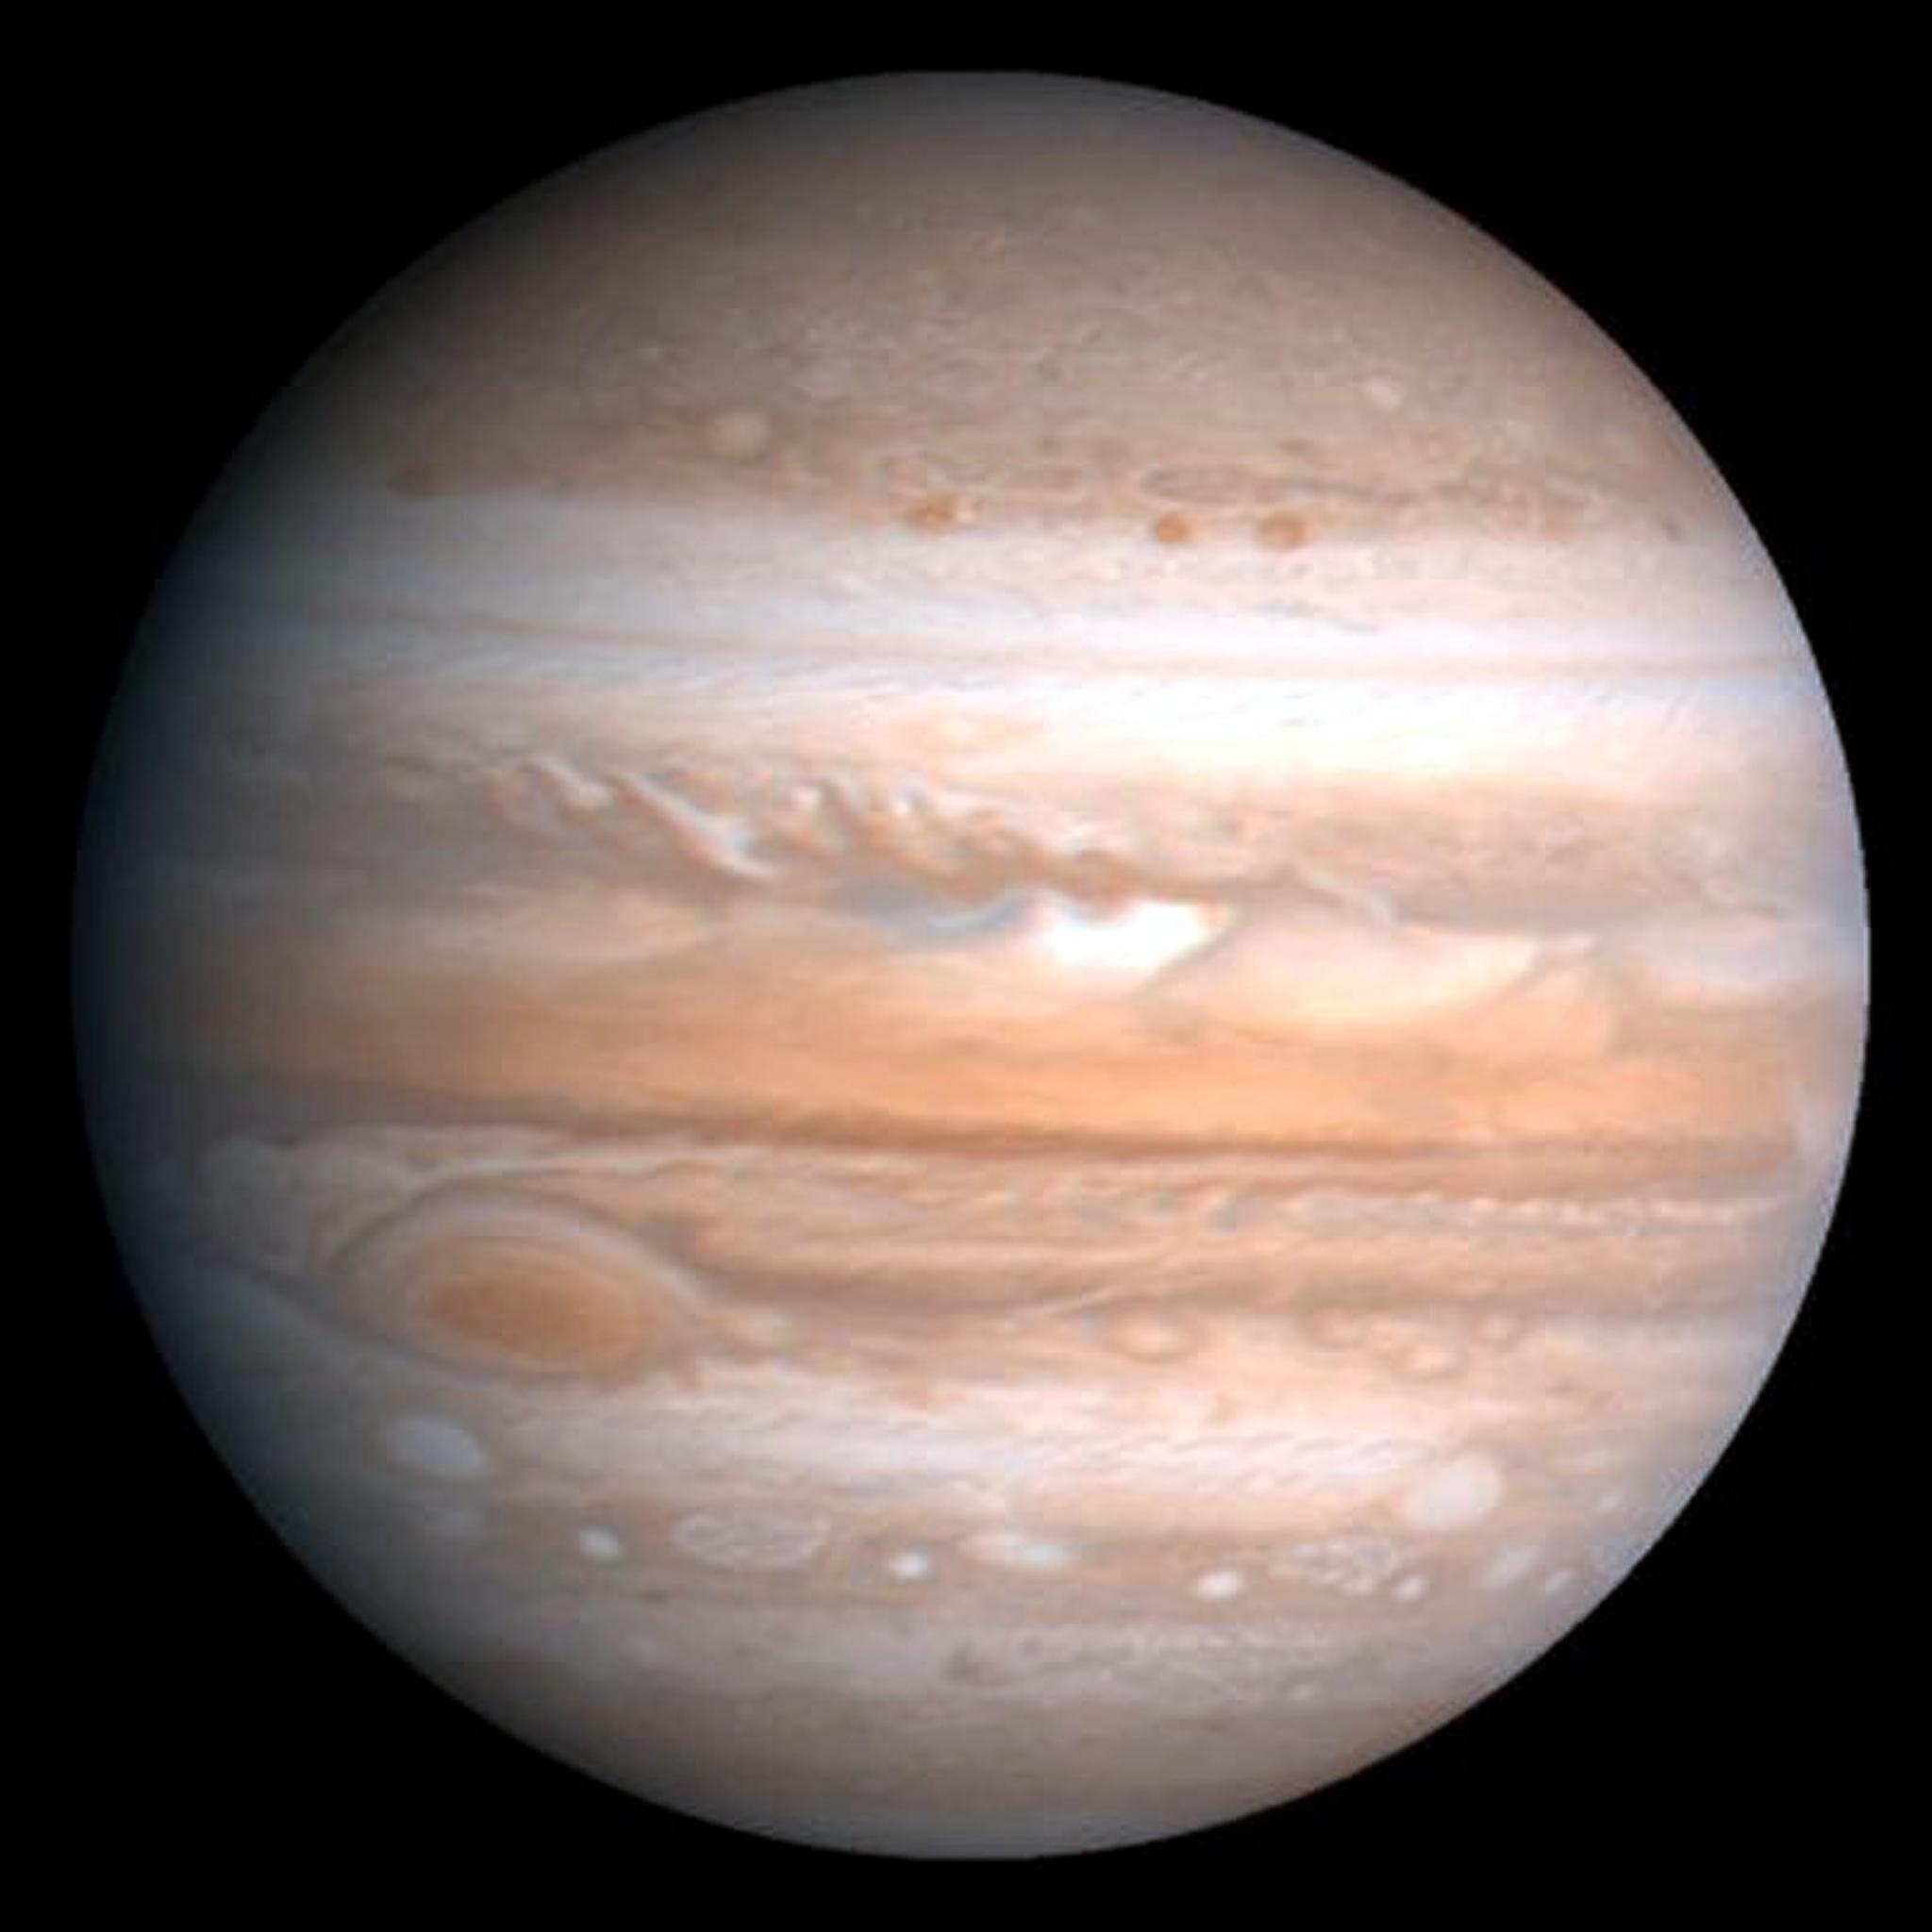 500公里木星大红斑深度刷新认知